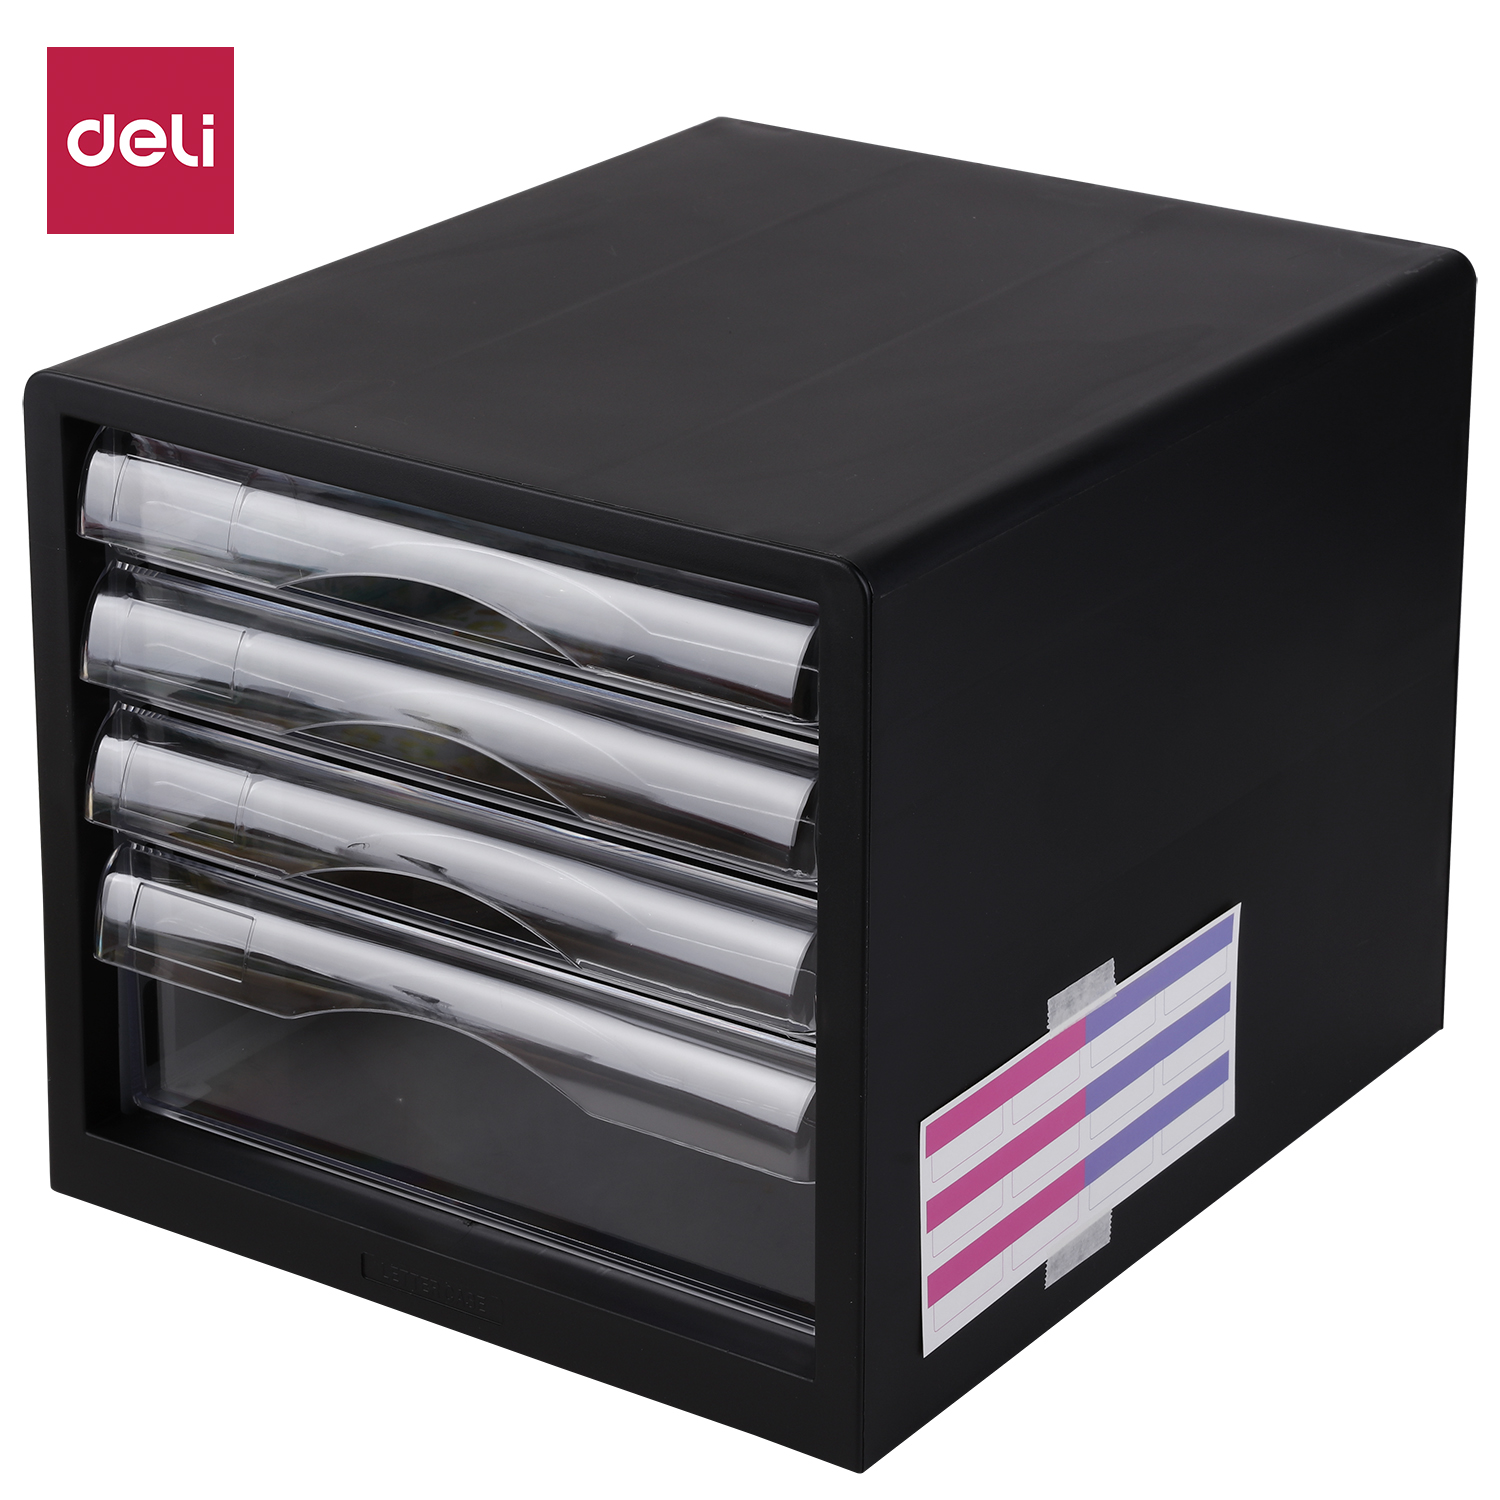 Deli-E9774 File Cabinet